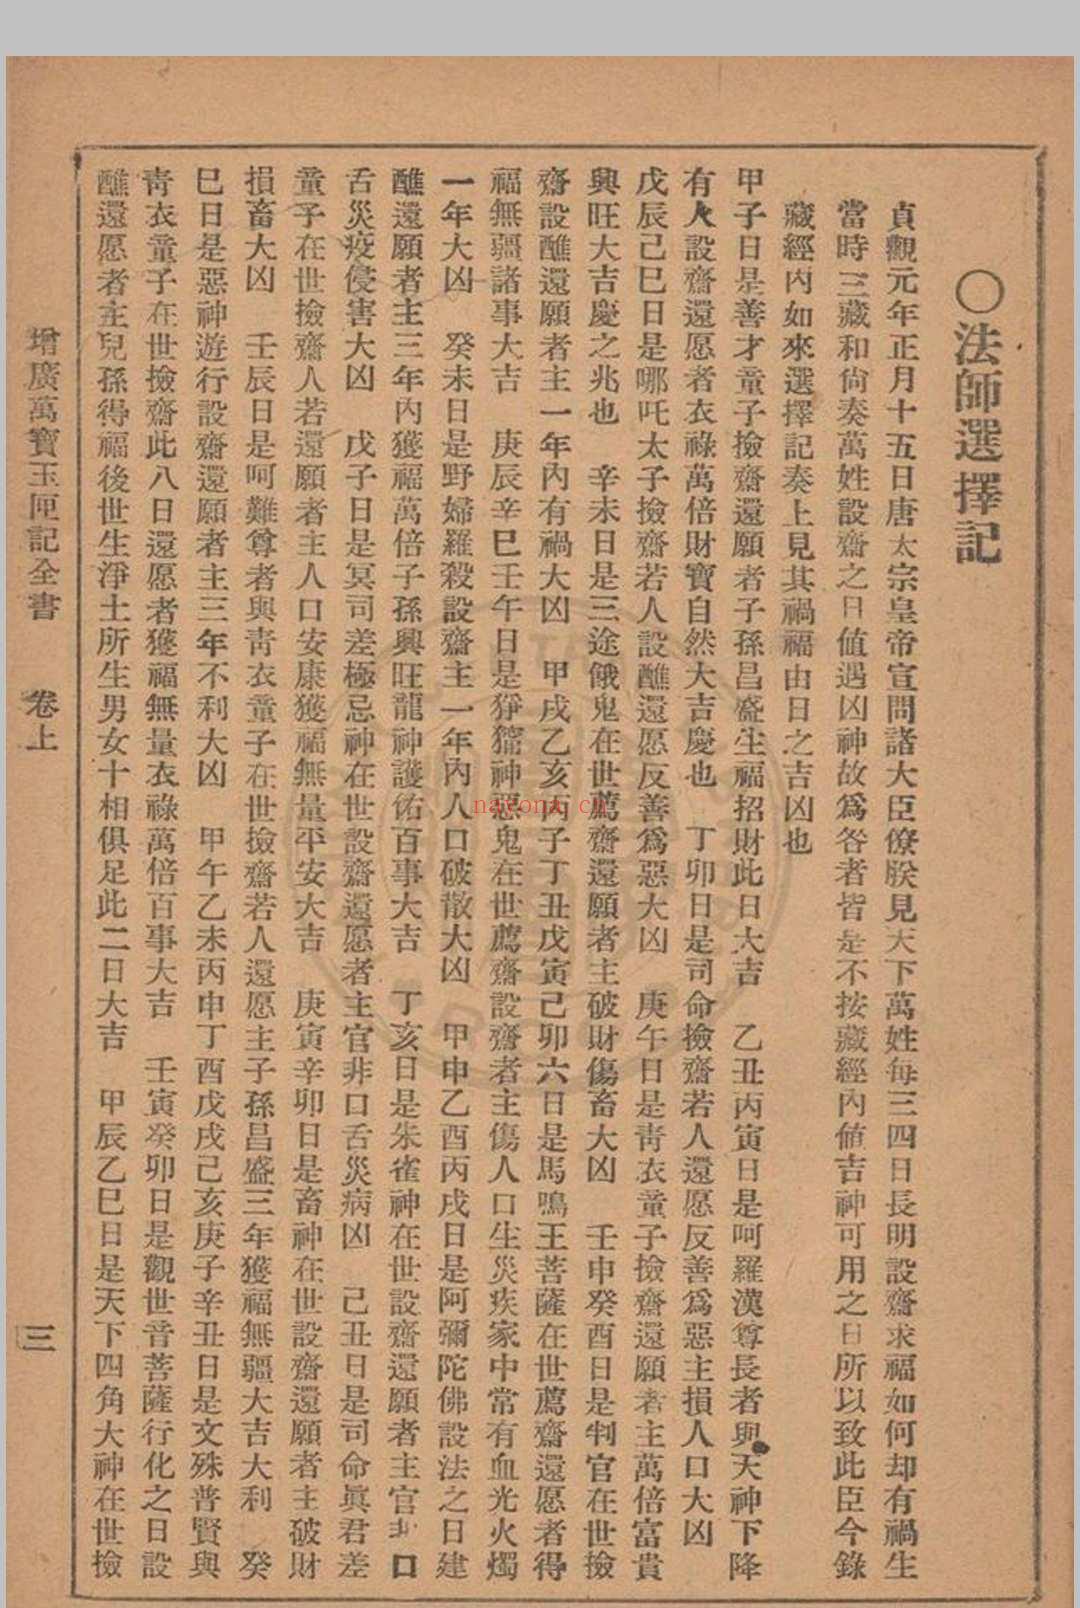 增广玉匣记 星相研究社编着 1947年 春明书店